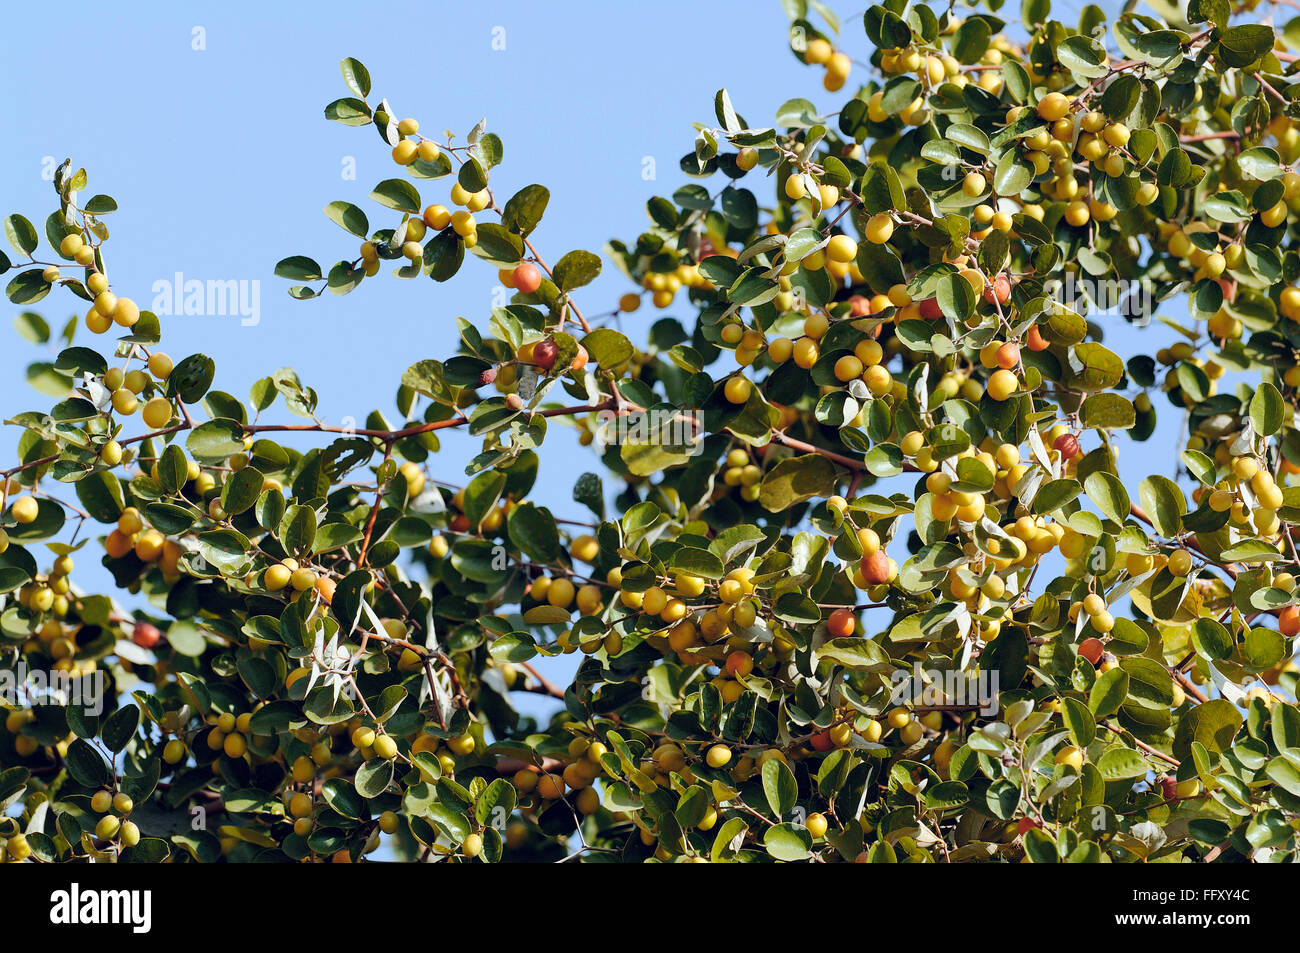 Albero di guava immagini e fotografie stock ad alta risoluzione - Alamy